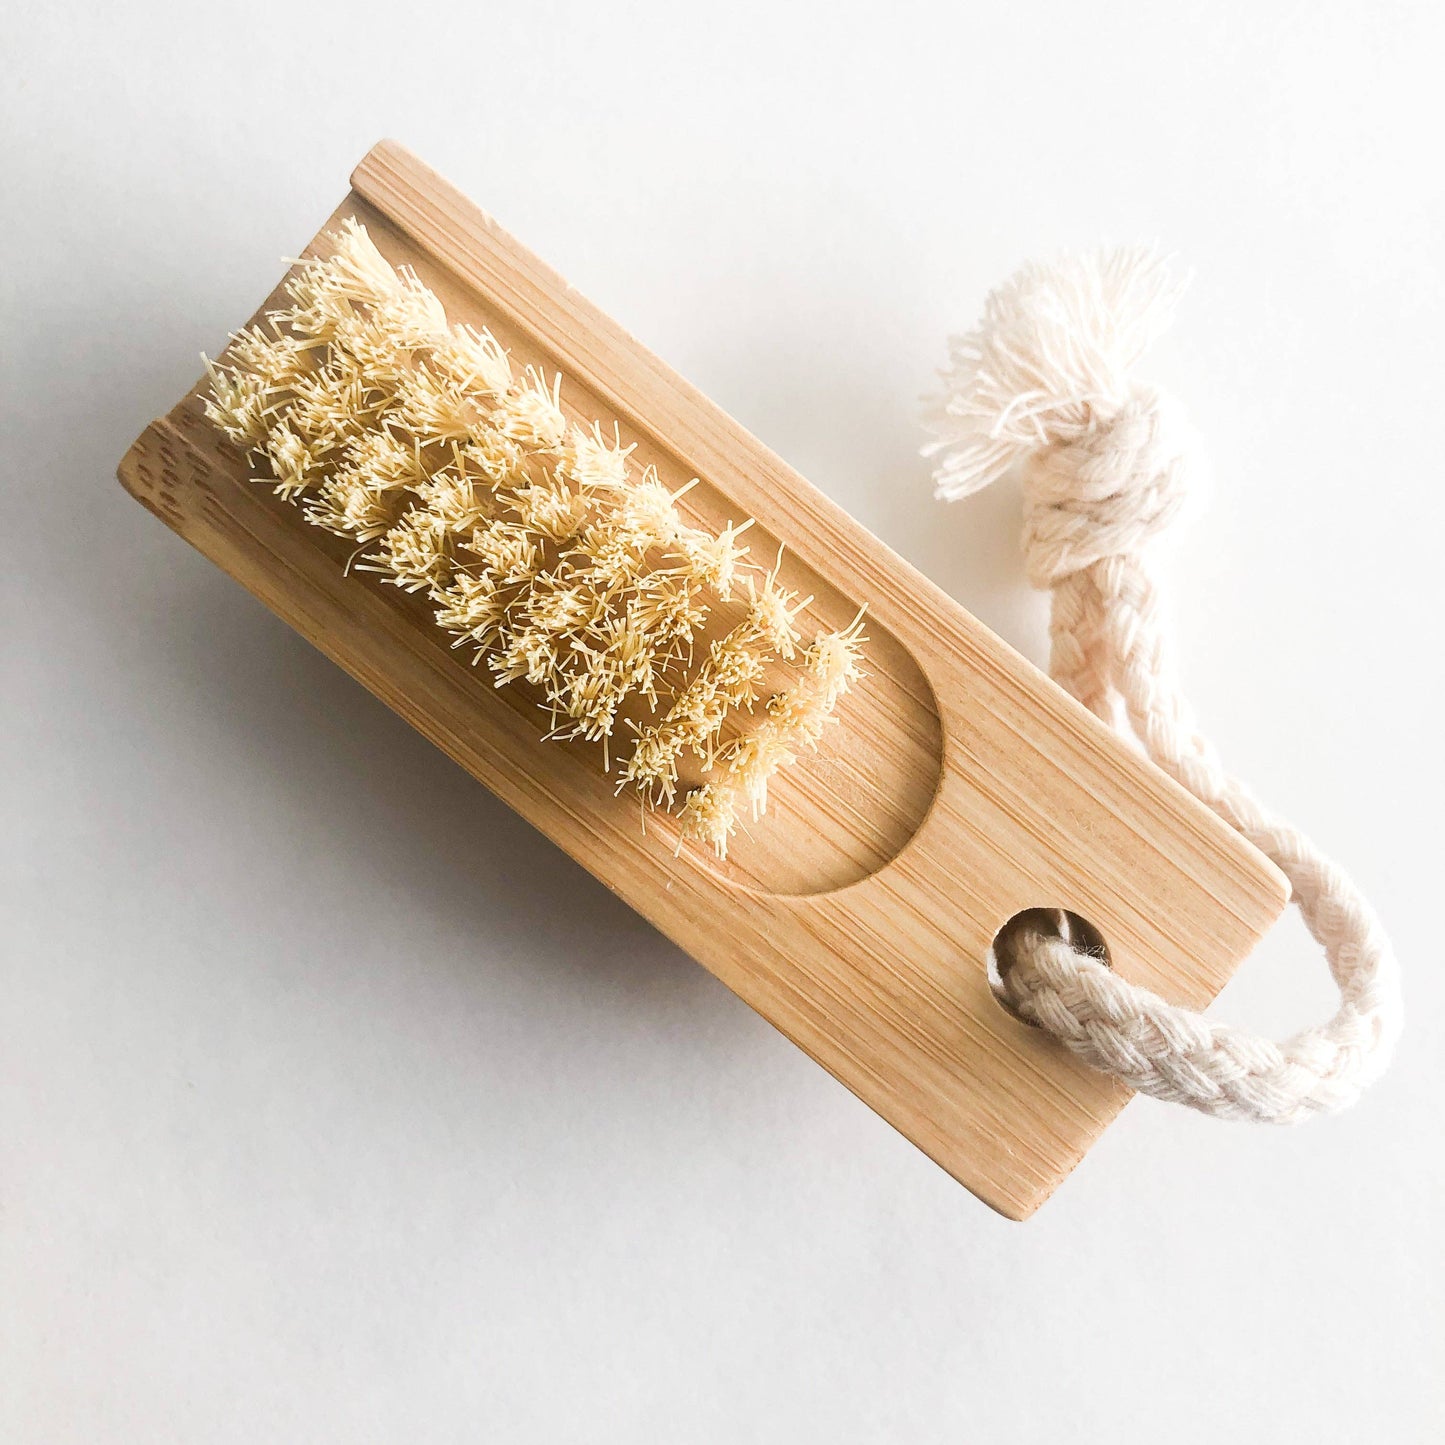 Double Sided Bamboo Nail Brush - Natural Sisal Bristles